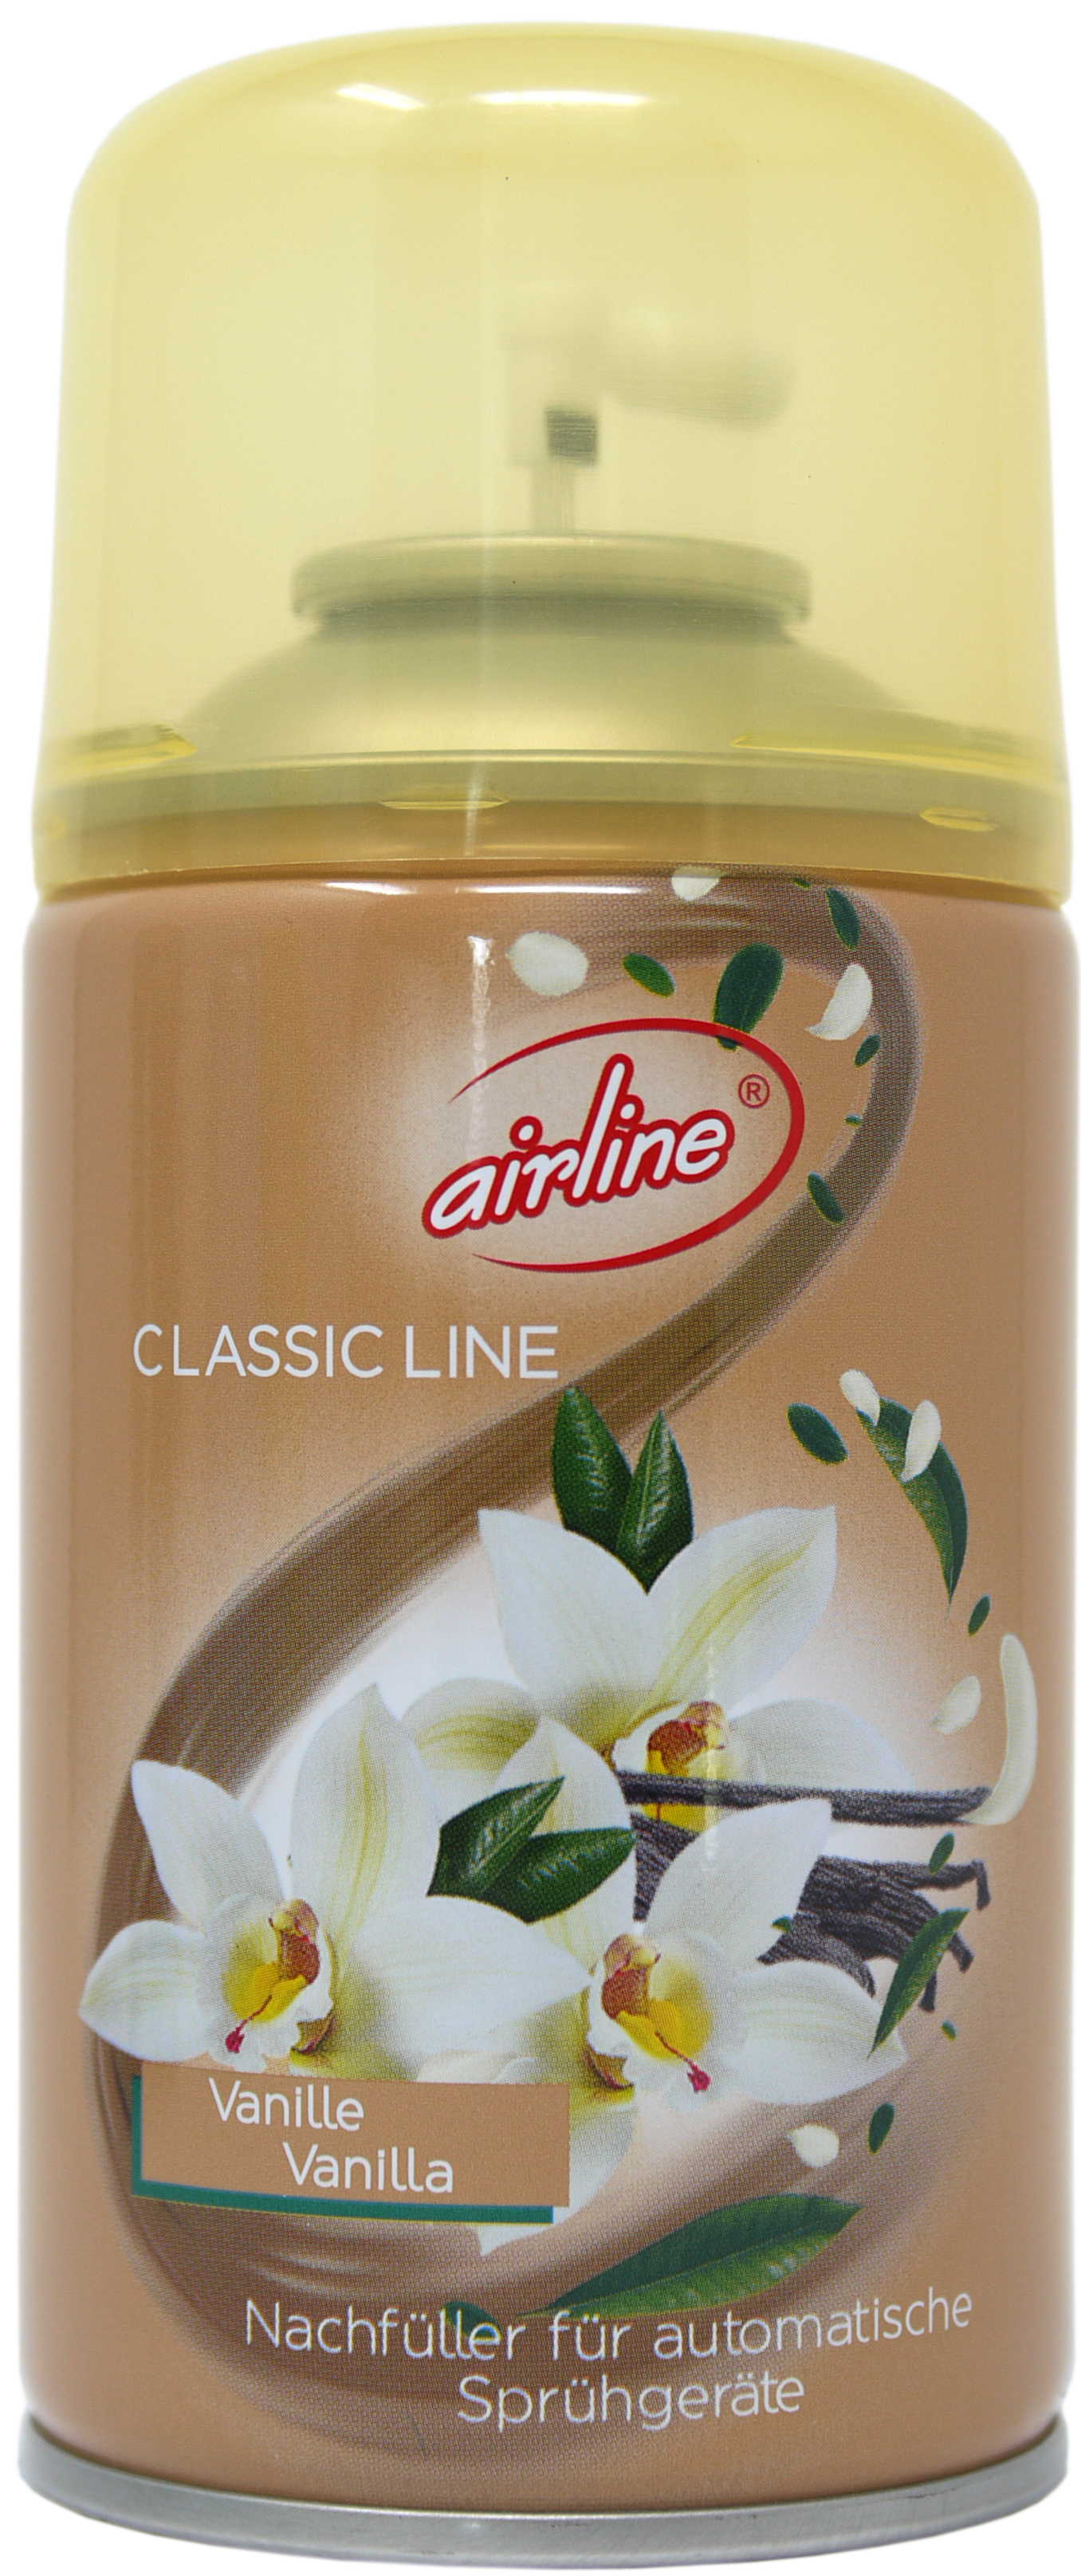 00510 - airline Classic Line Vanille Nachfüllkartusche 250 ml